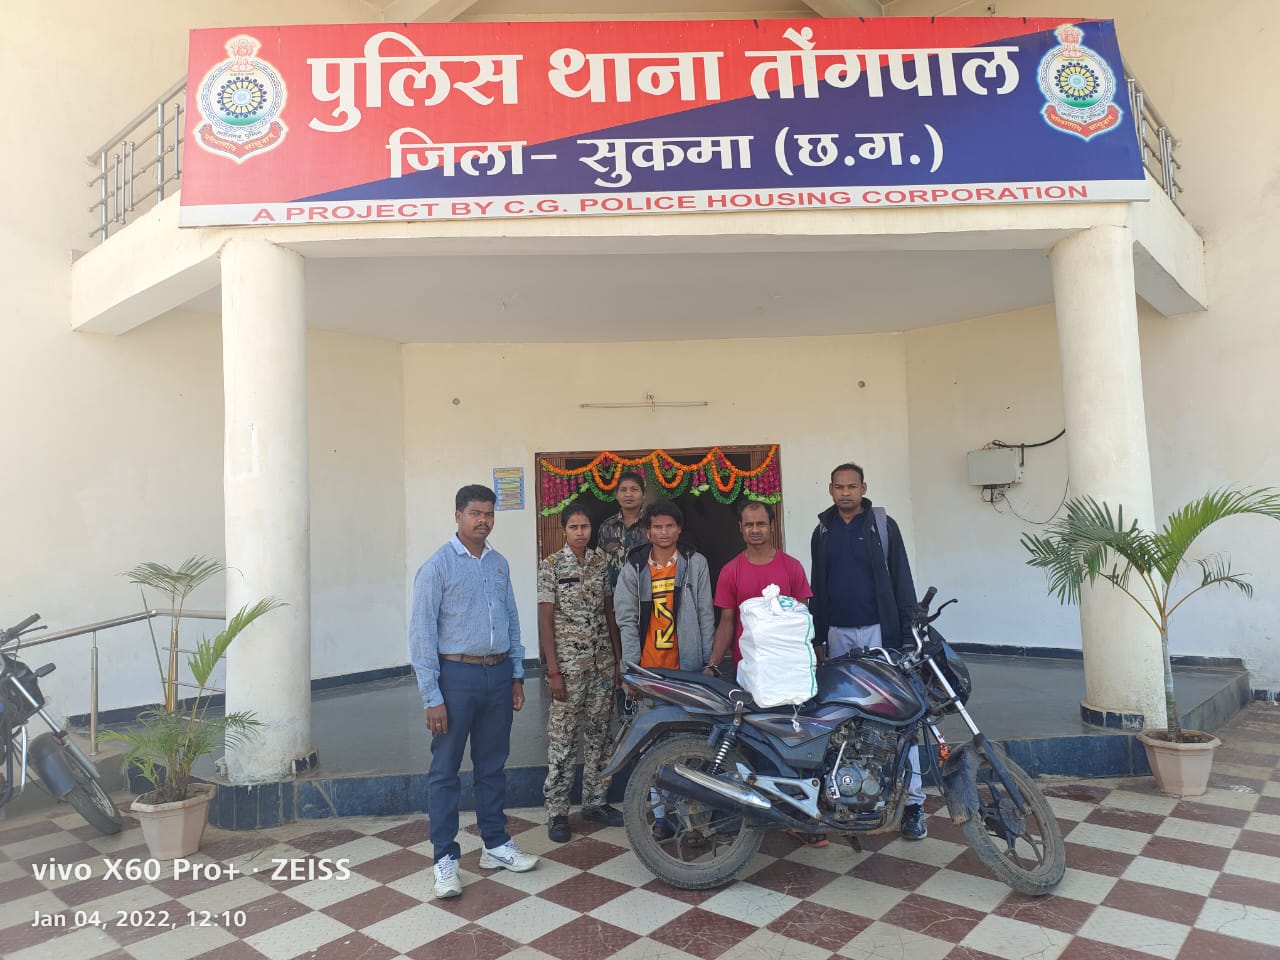 बाइक से गांजा तस्करी, ओडिशा के 2 गिरफ्तार